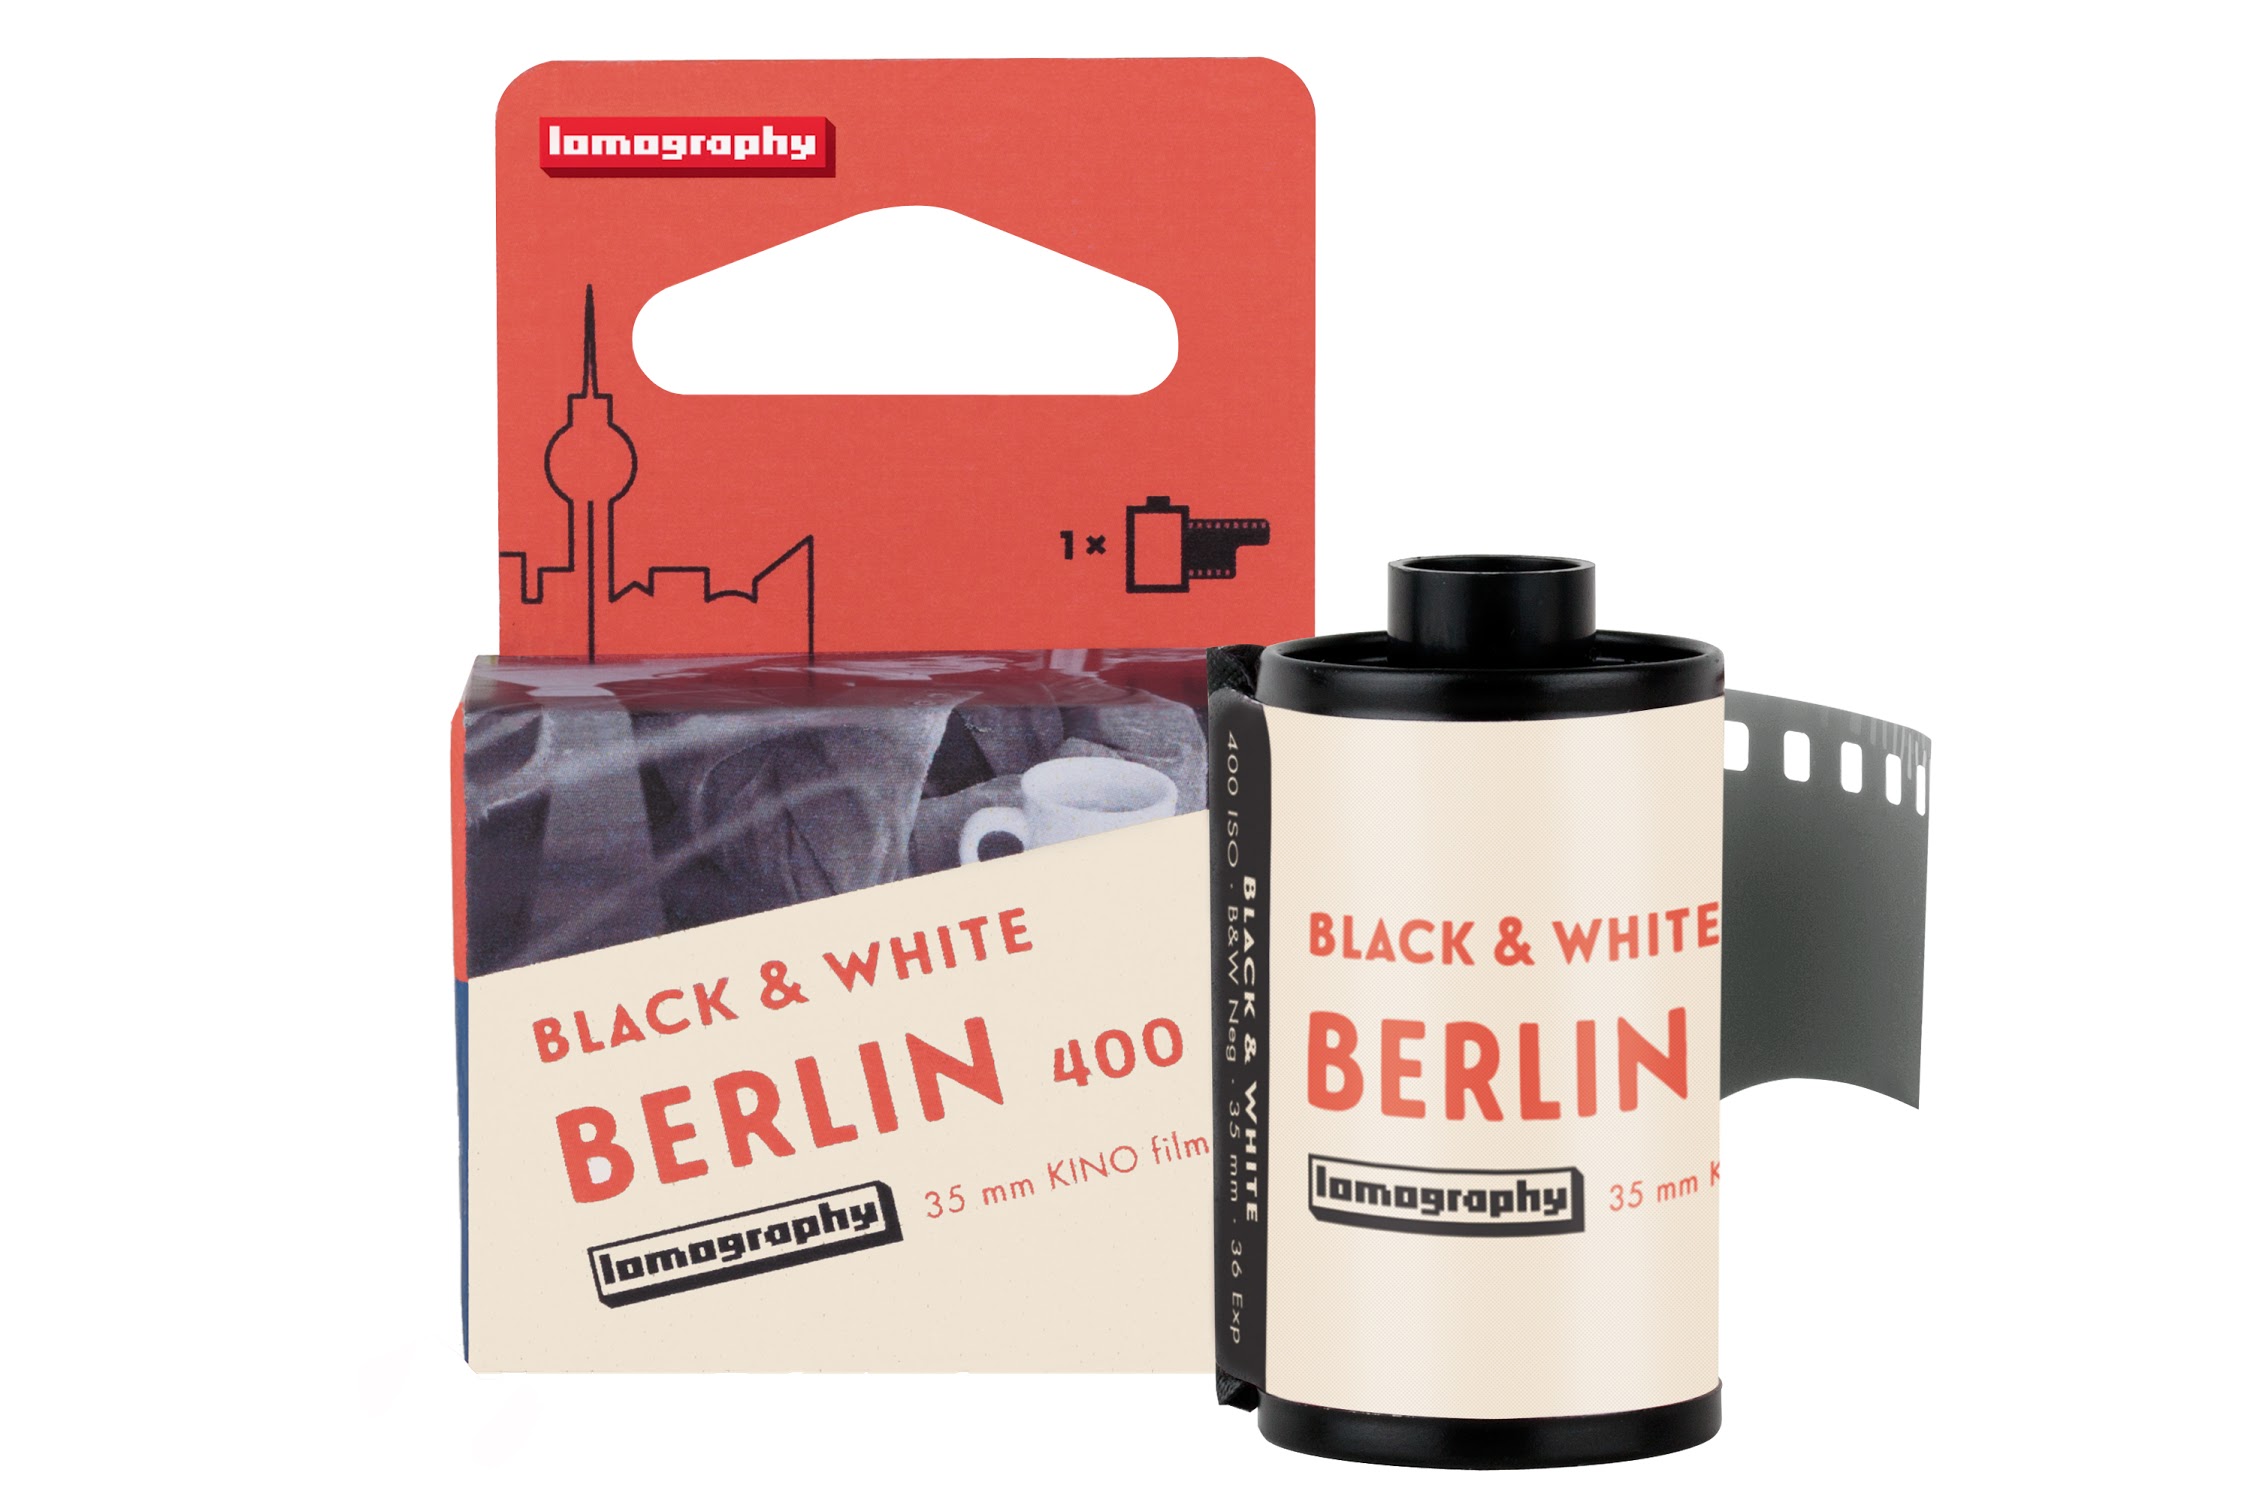 衝動買いしたい。ロモグラフィーから映画のワンシーンのような写真が撮れるモノクロフィルム「B&W 400 35mm Berlin Kino Film」を発売。